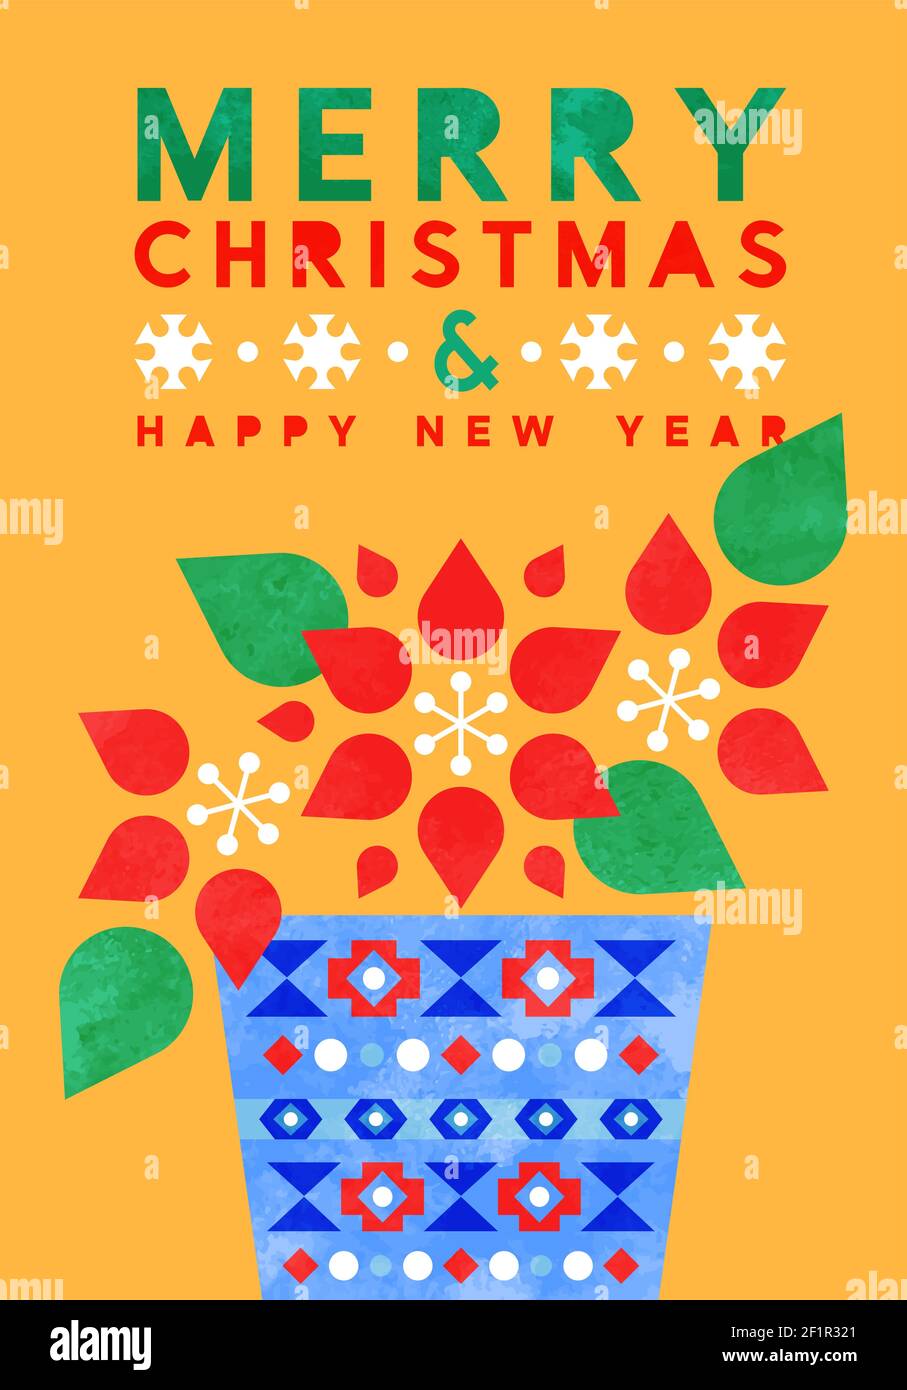 Joyeux Noël carte de vœux du nouvel an illustration d'une fleur poinsettia moderne de style scandinave aux formes aquarelle colorées. Résumé Illustration de Vecteur